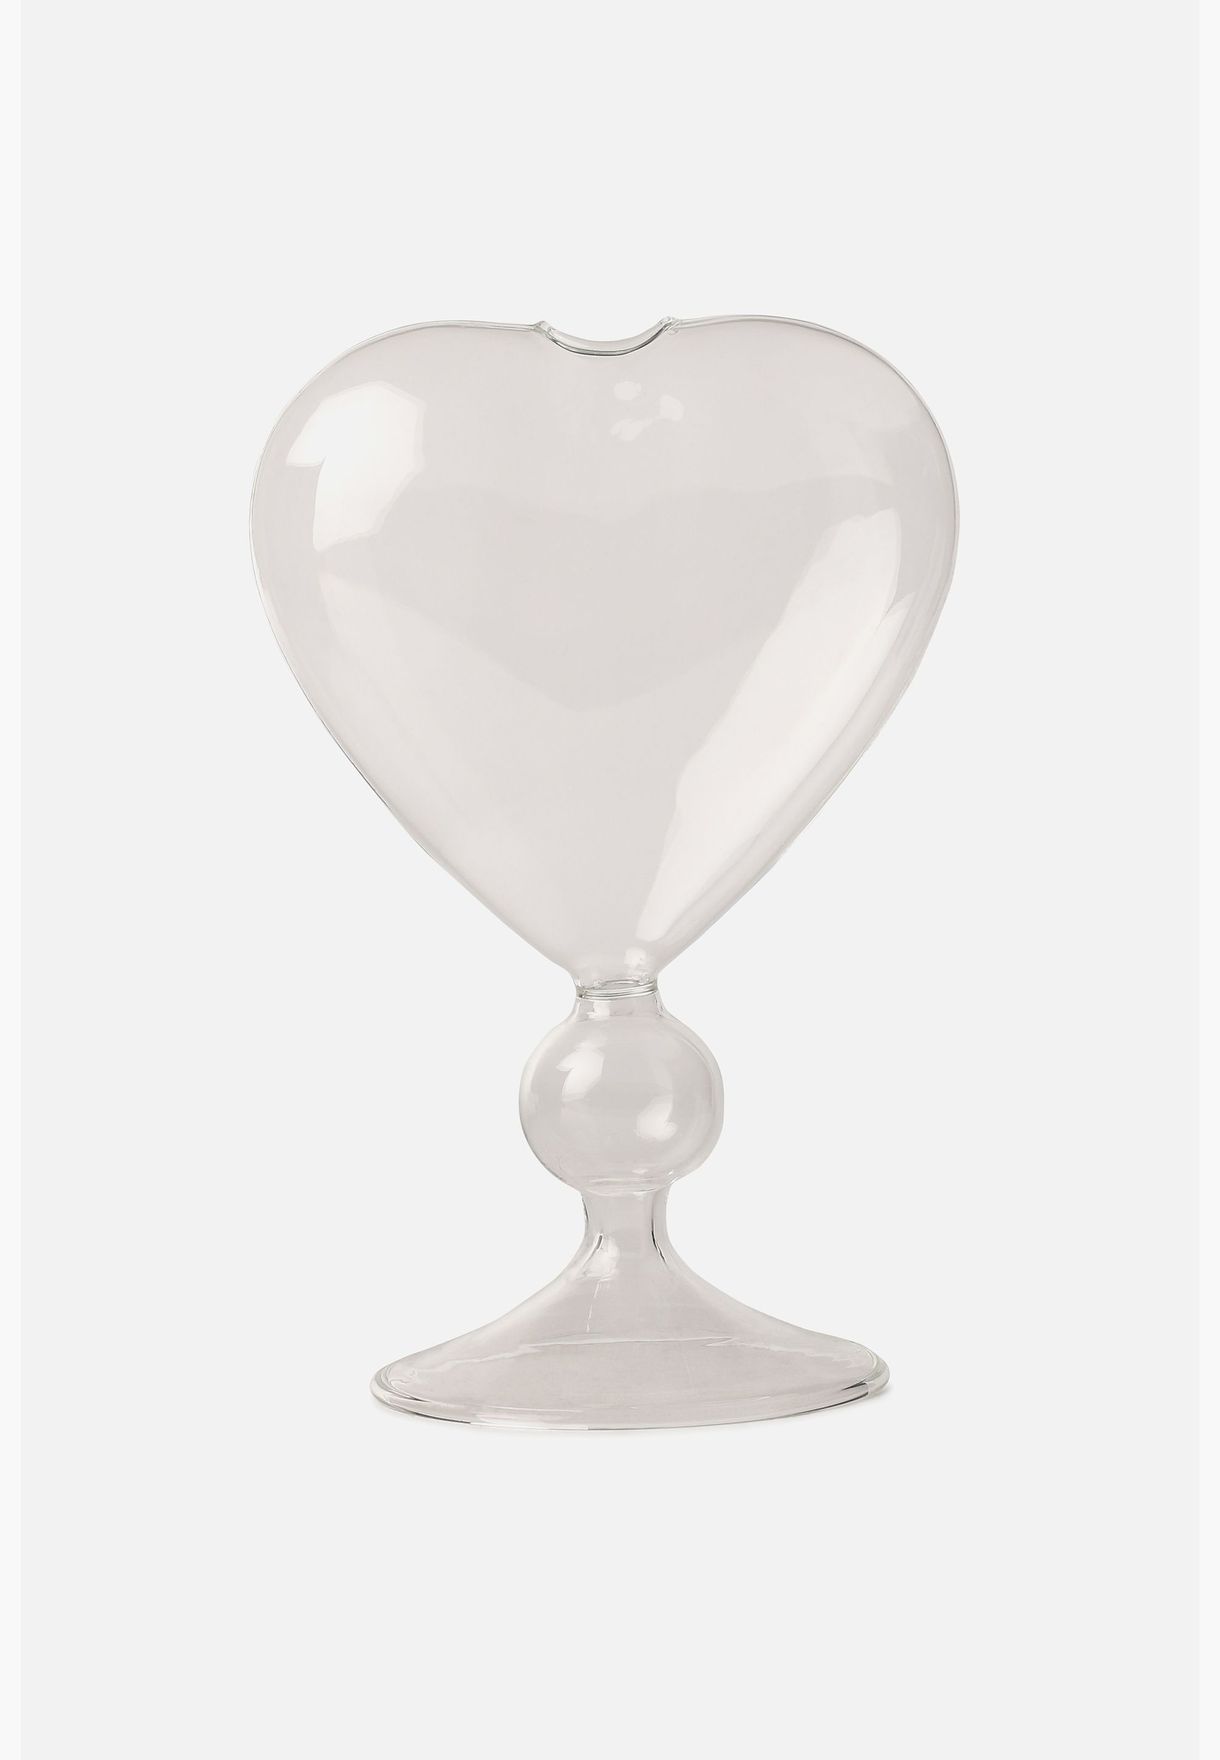 Heart Shaped Modern Glass Flower Vase For Home Decor 